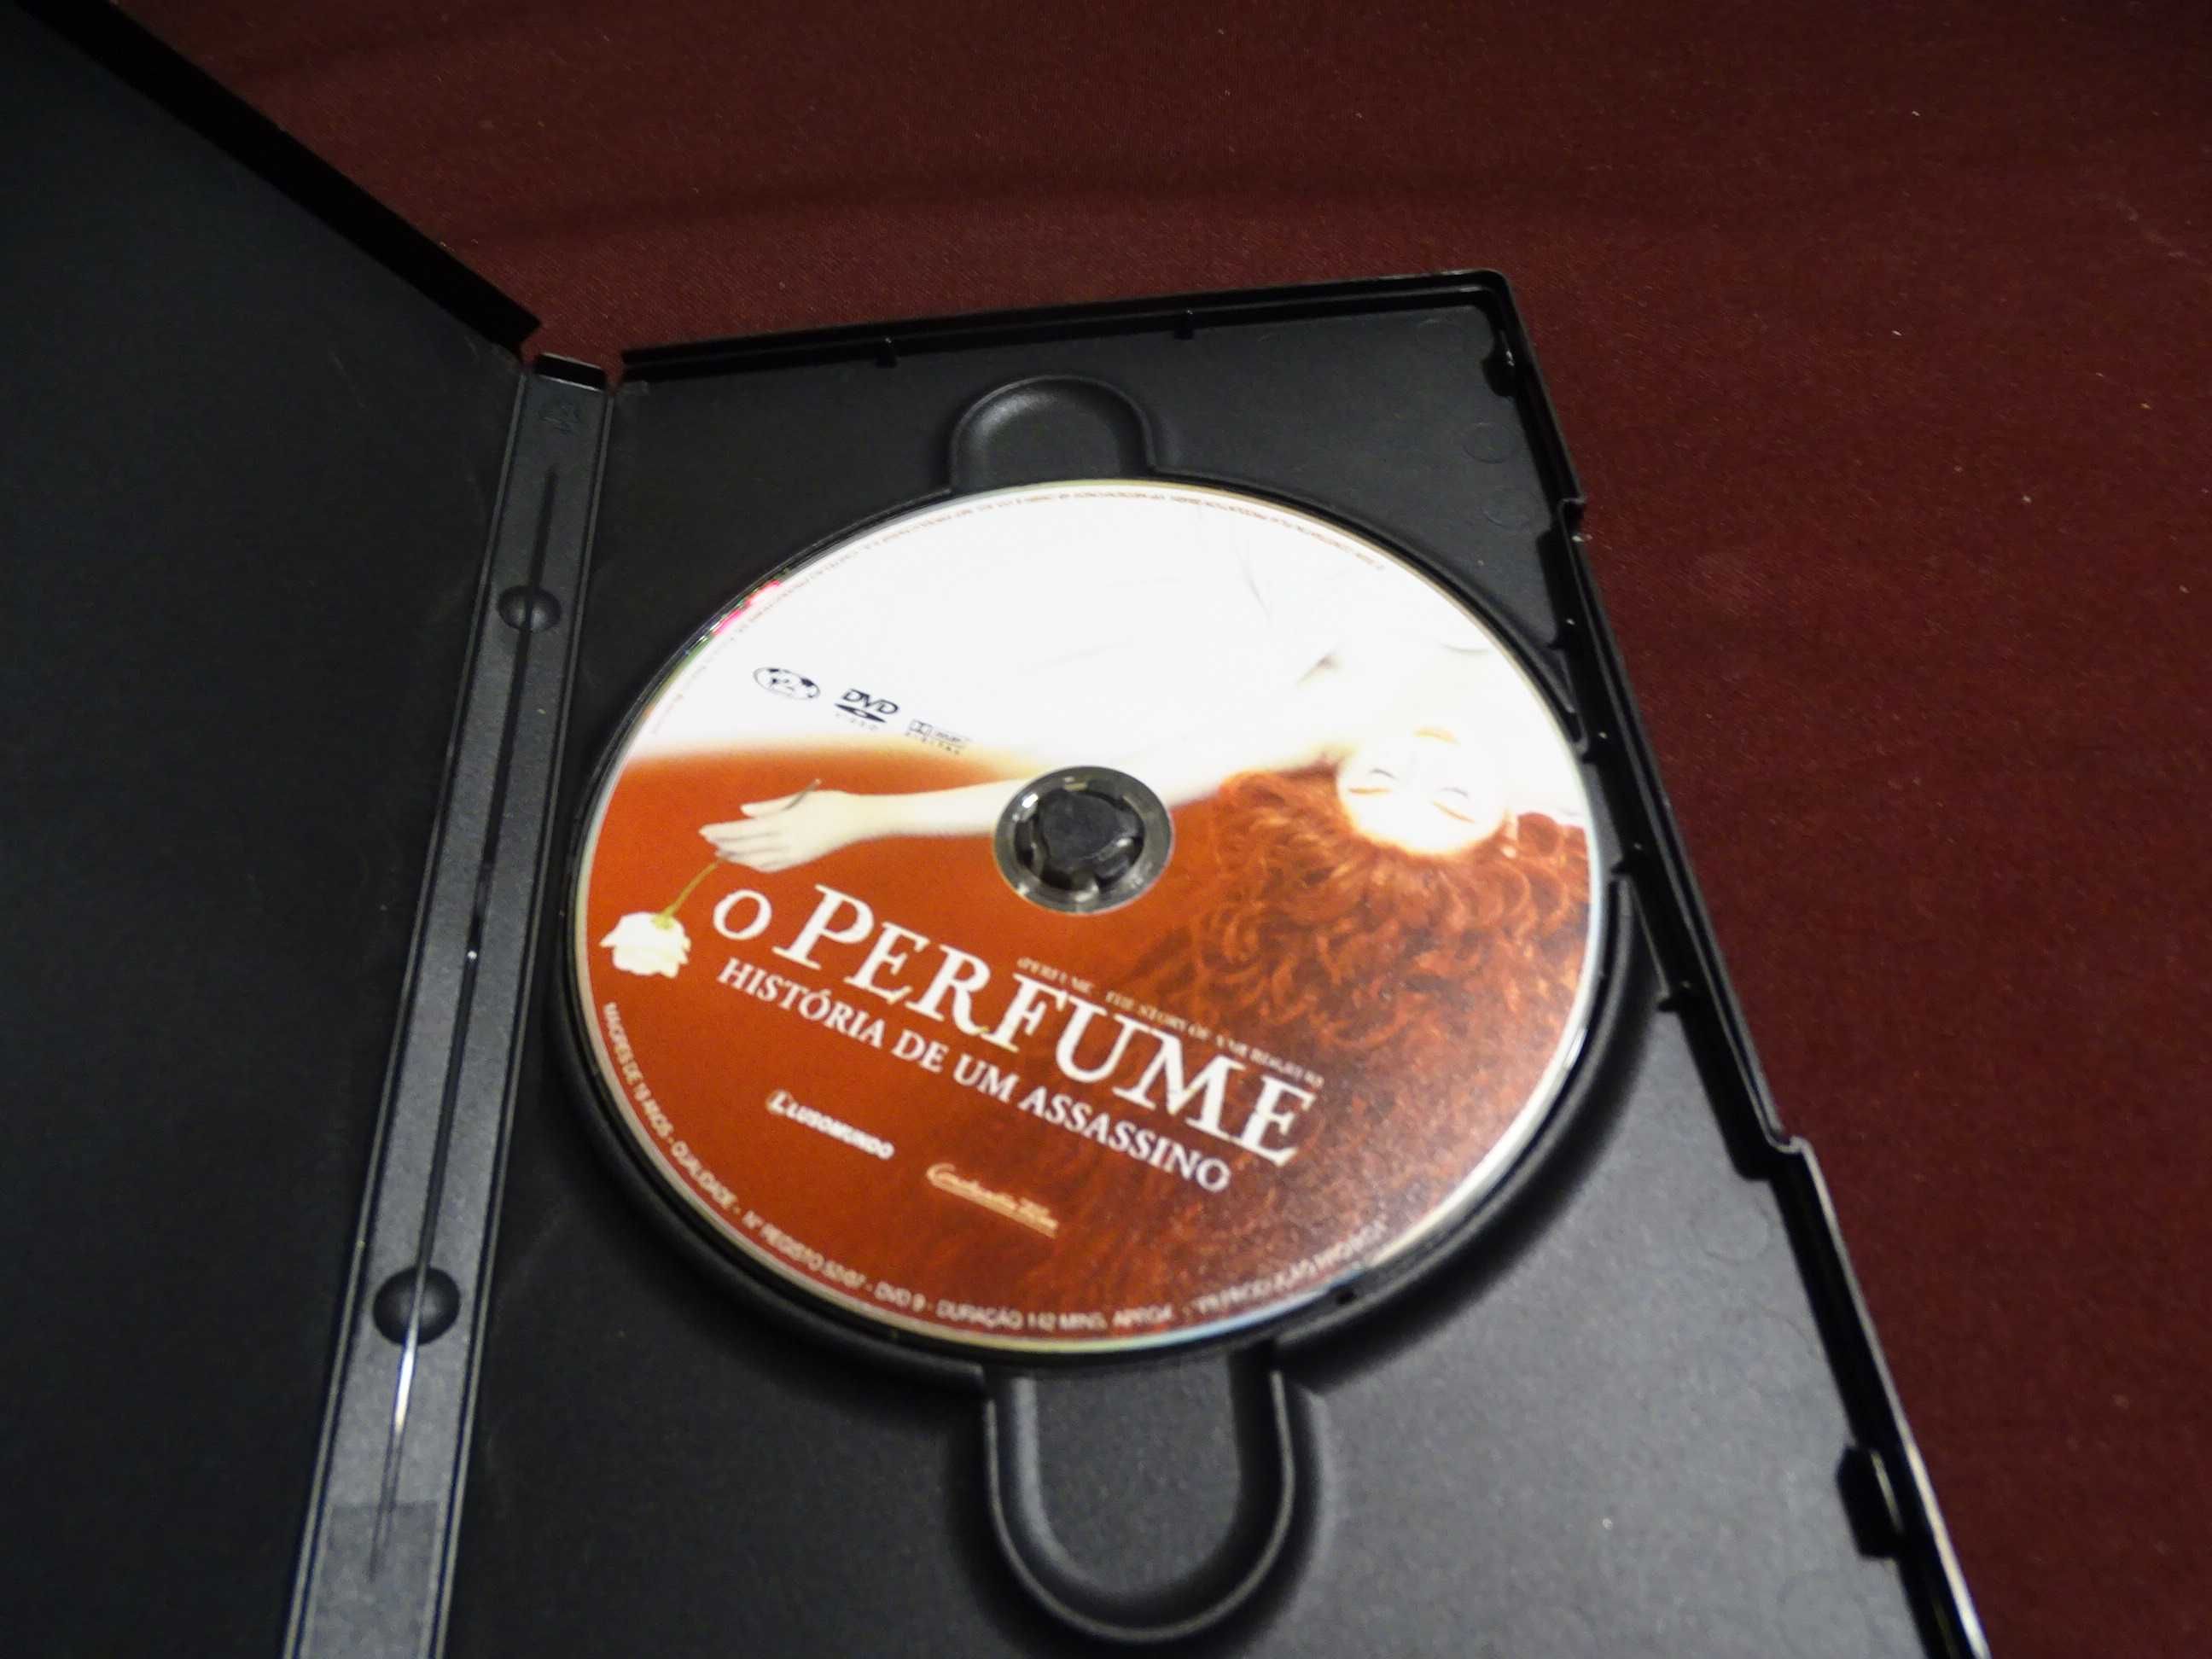 DVD-O Perfume-História de um Assassino